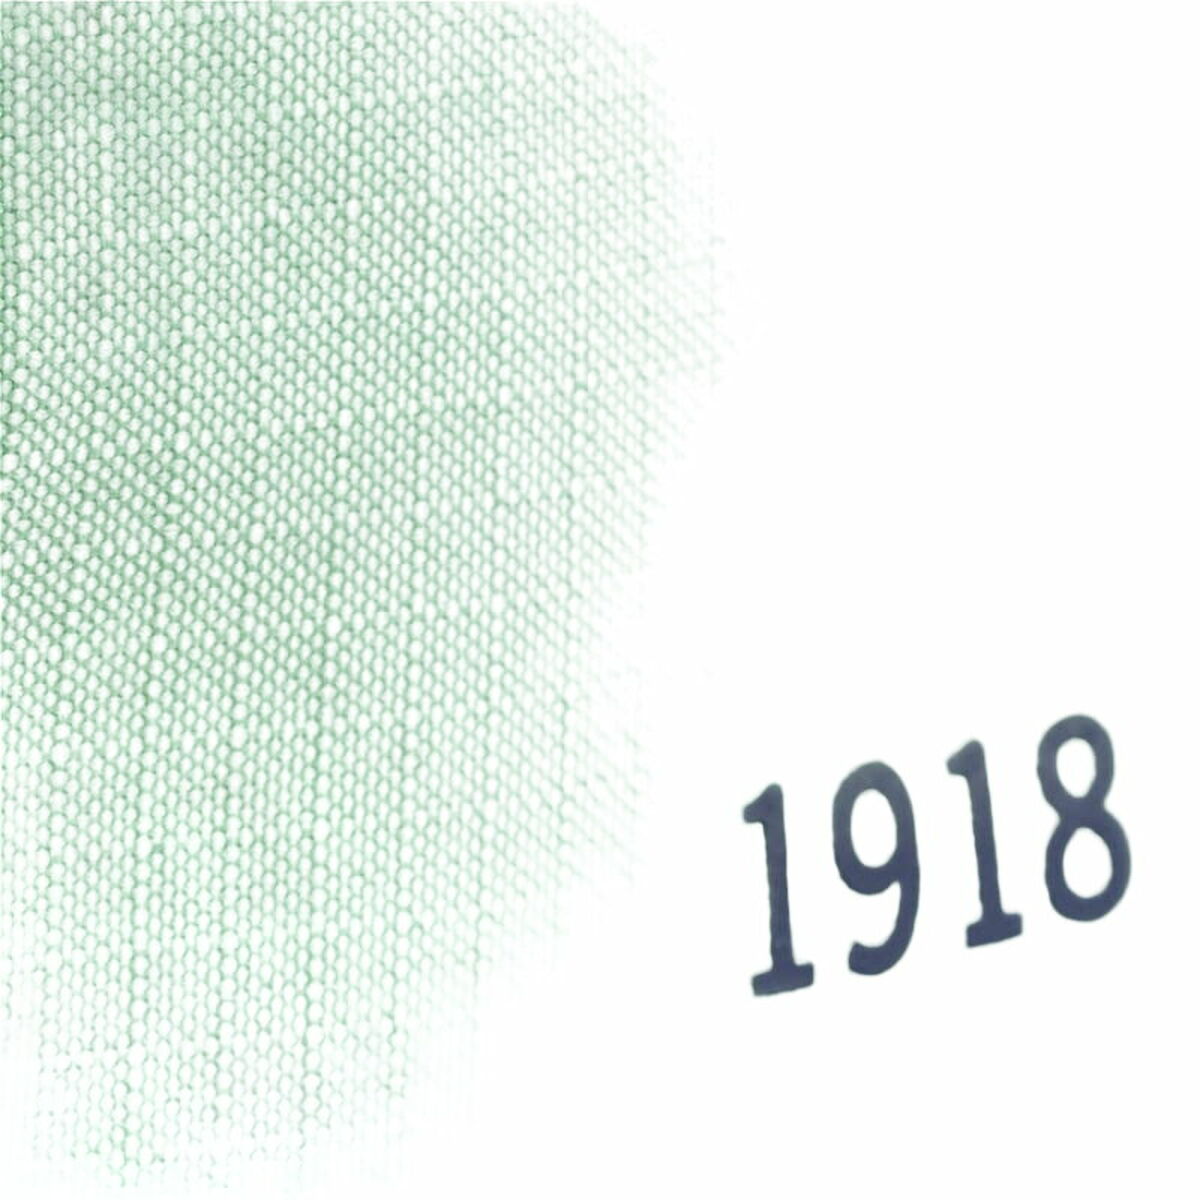 Casual Rugtas Milan Serie 1918 Groen 42 x 29 x 11 cm